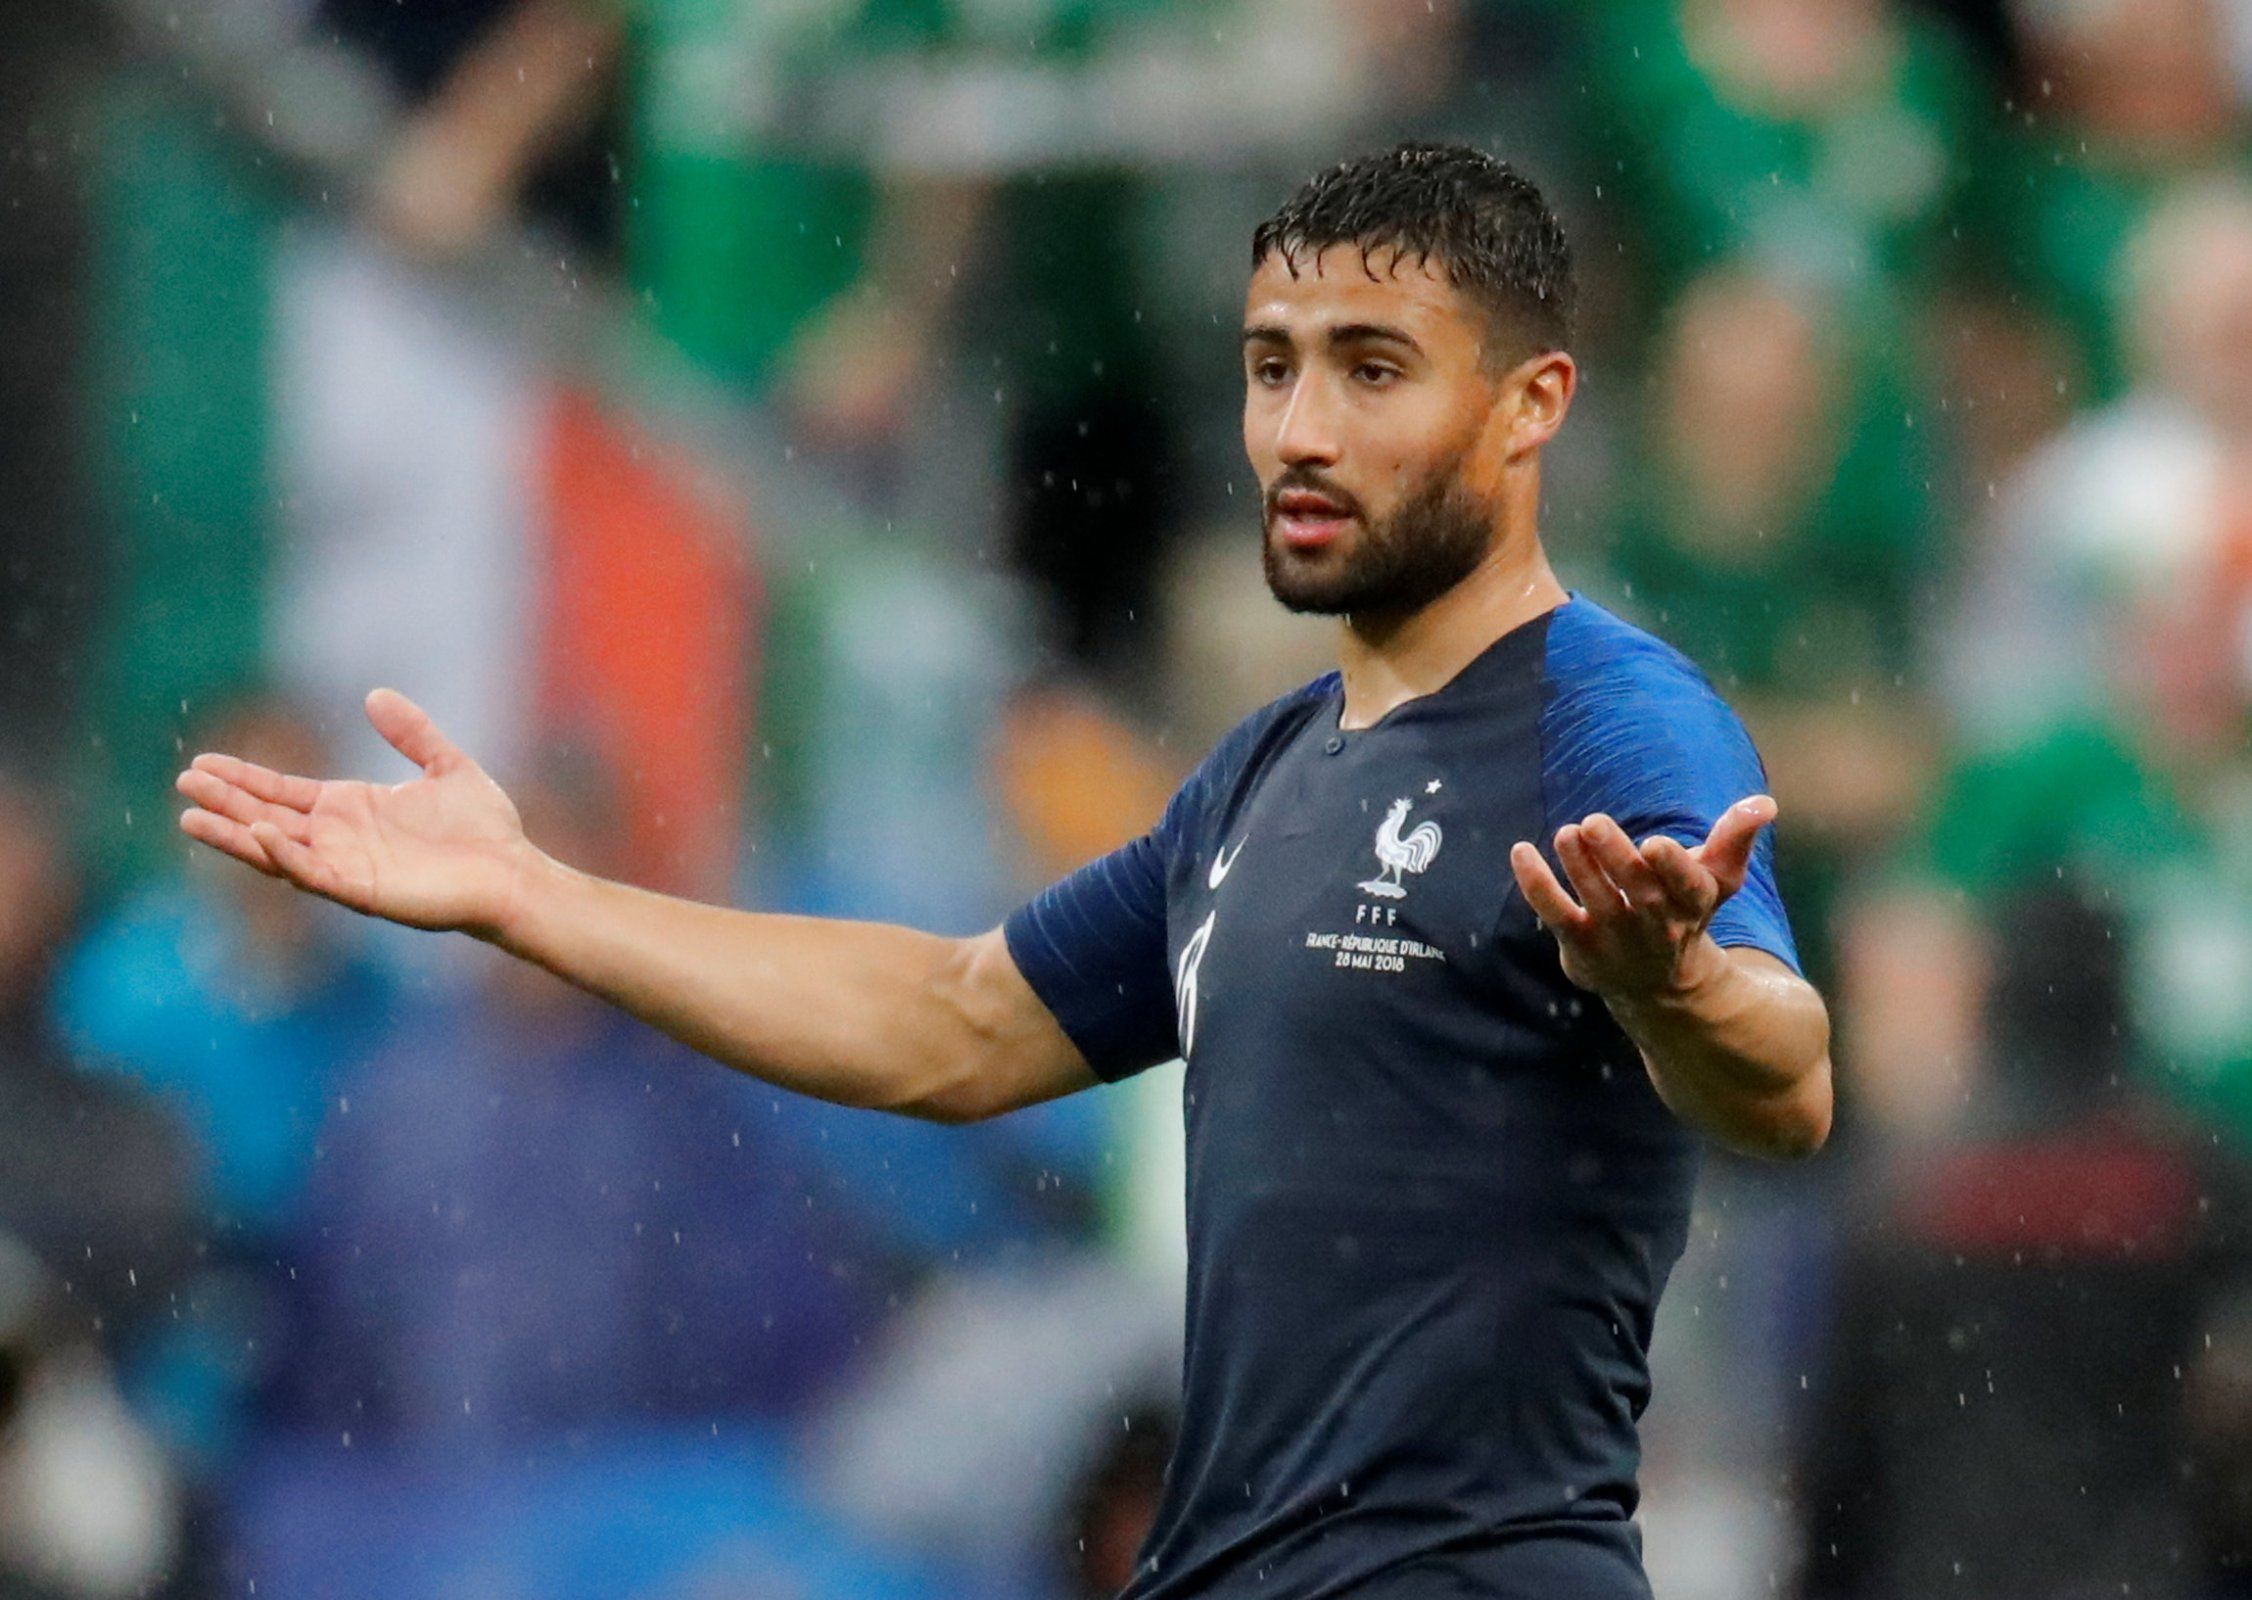 Lyon star Nabil Fekir in action for France